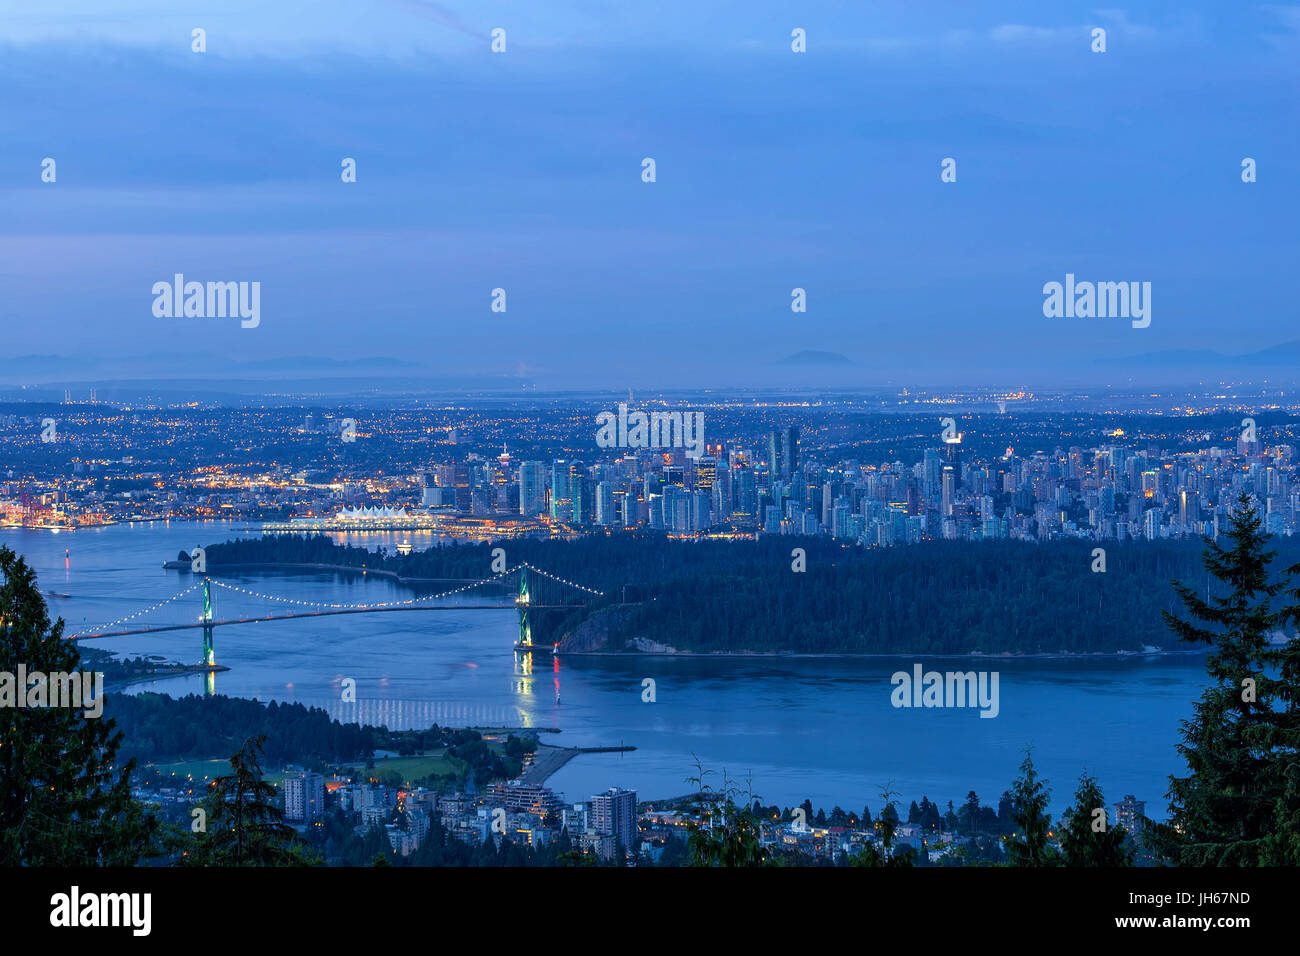 Vancouver British Columbia Kanada Stadtbild von Stanley Park Lions Gate Bridge am frühen Morgen Dämmerung blaue Stunde Stockfoto